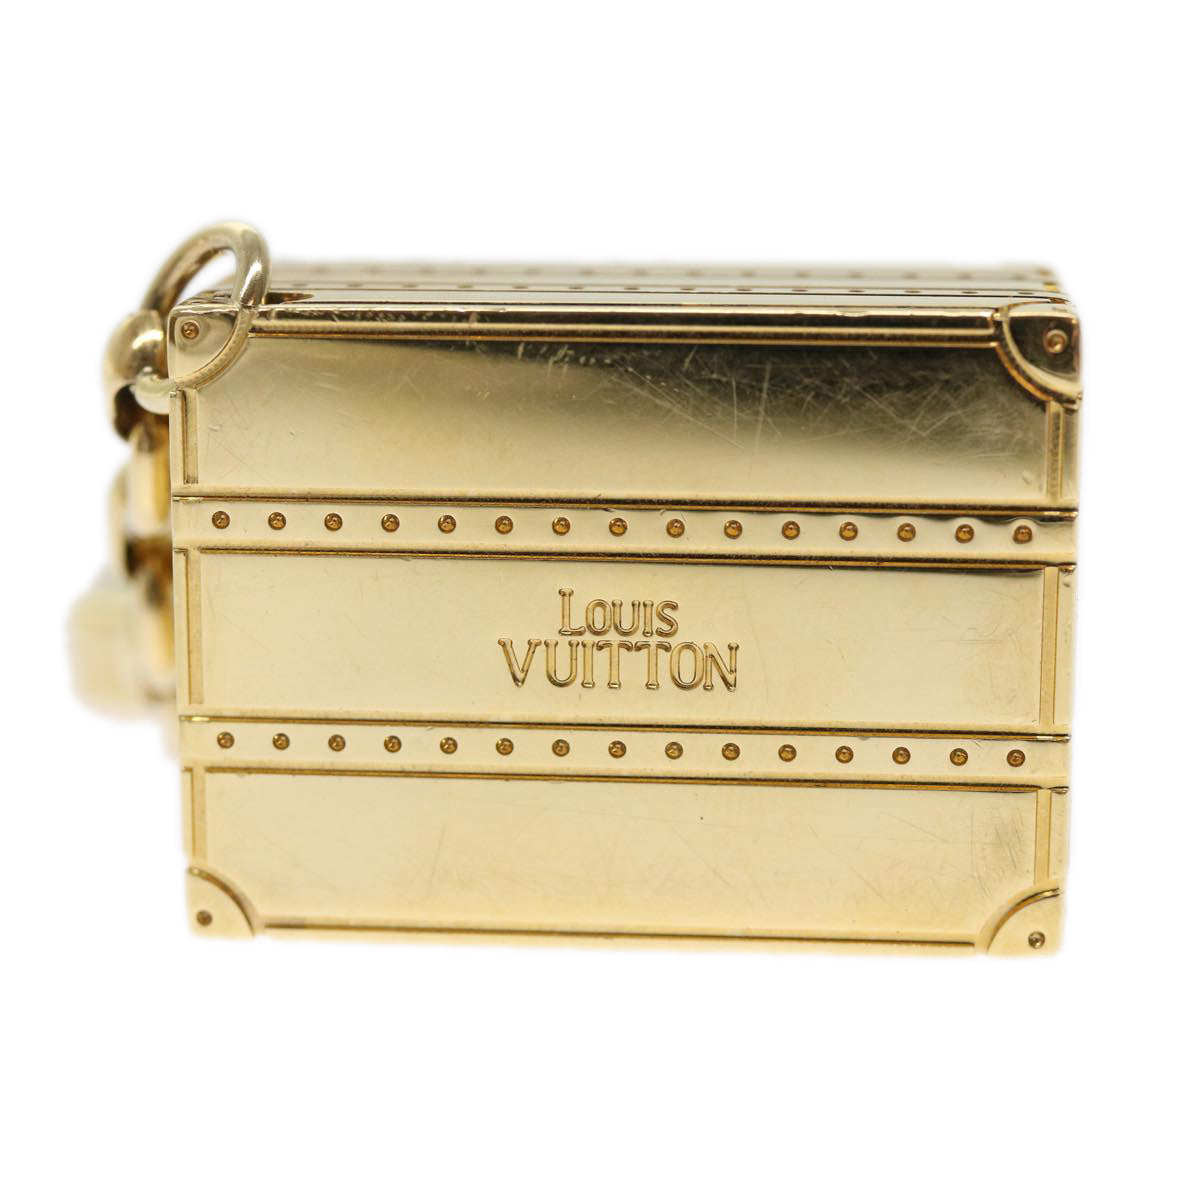 LOUIS VUITTON Porte Cles Trunk Key Holder Gold Tone M66458 LV Auth 49926